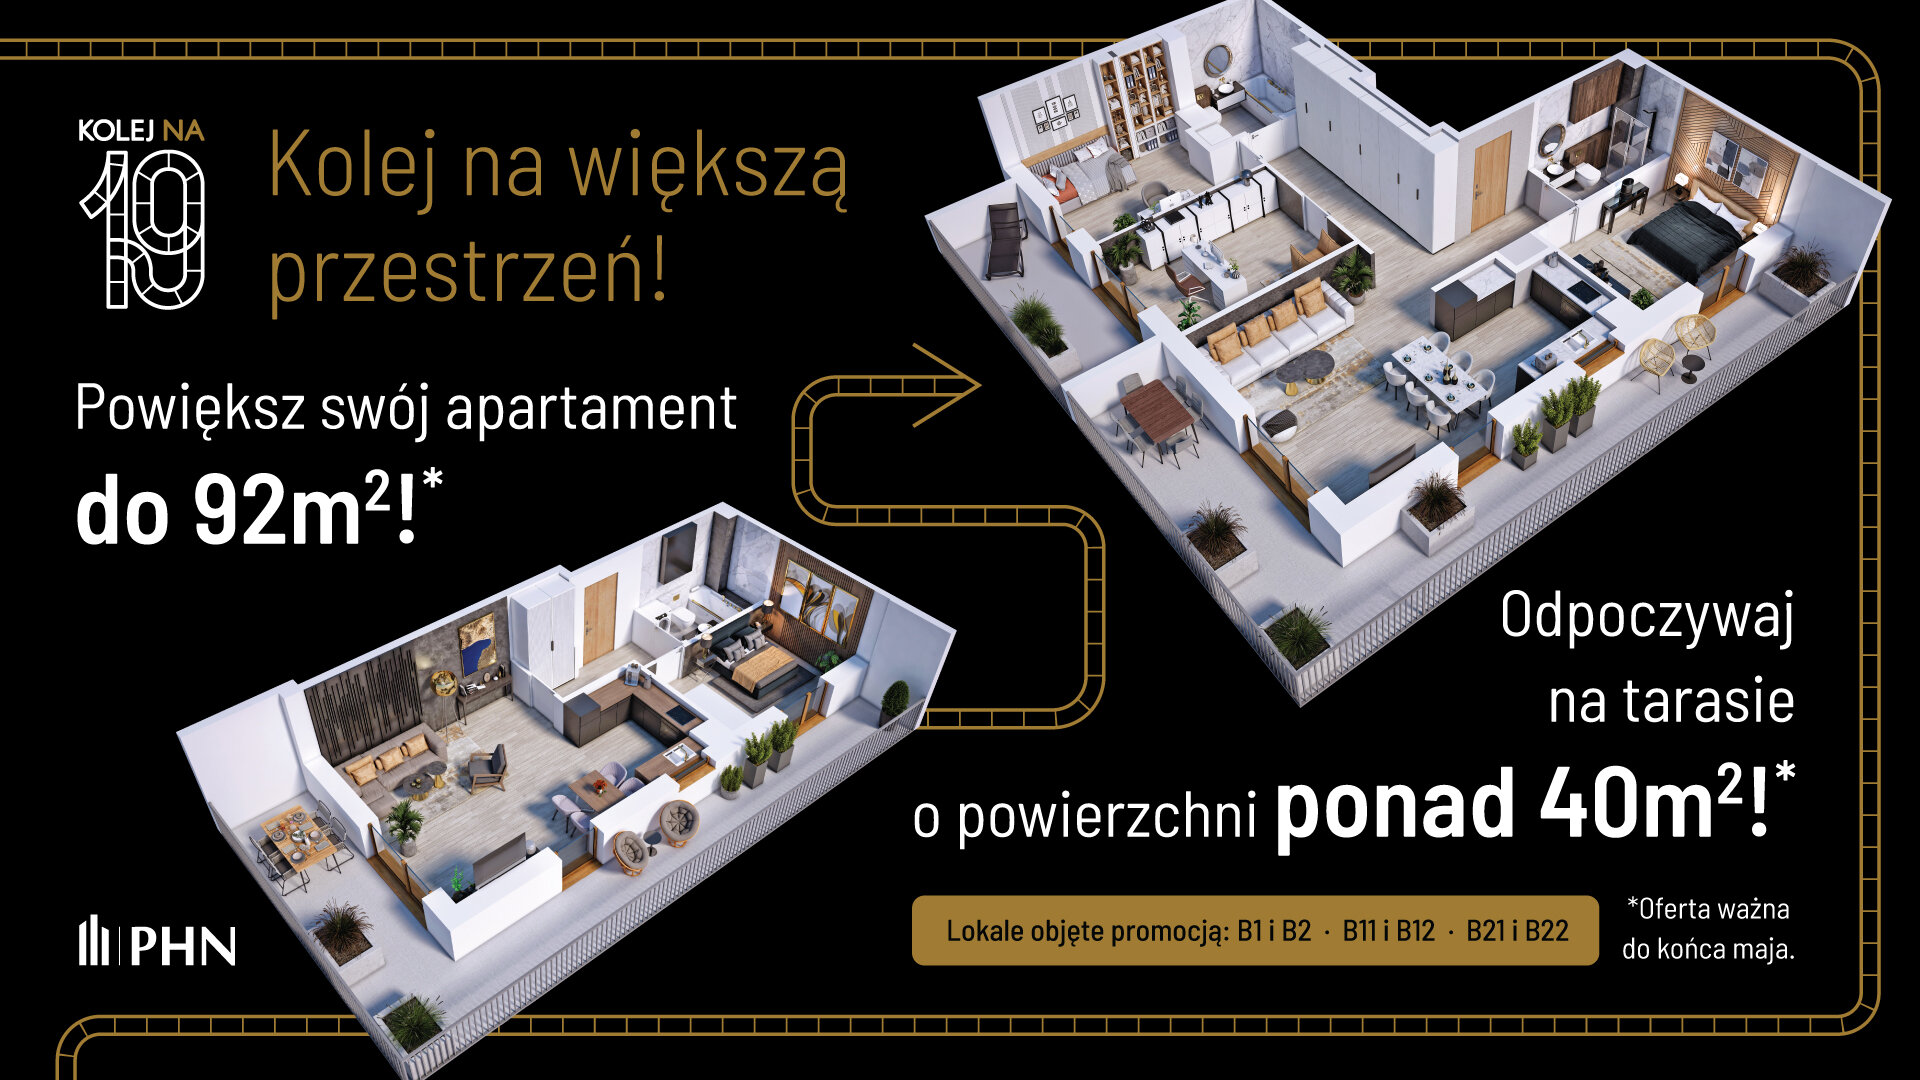 Wiosenna promocja w KOLEJ NA 19 - Apartament, 3 pokoje, Warszawa,53.73 m²,983 474 zł